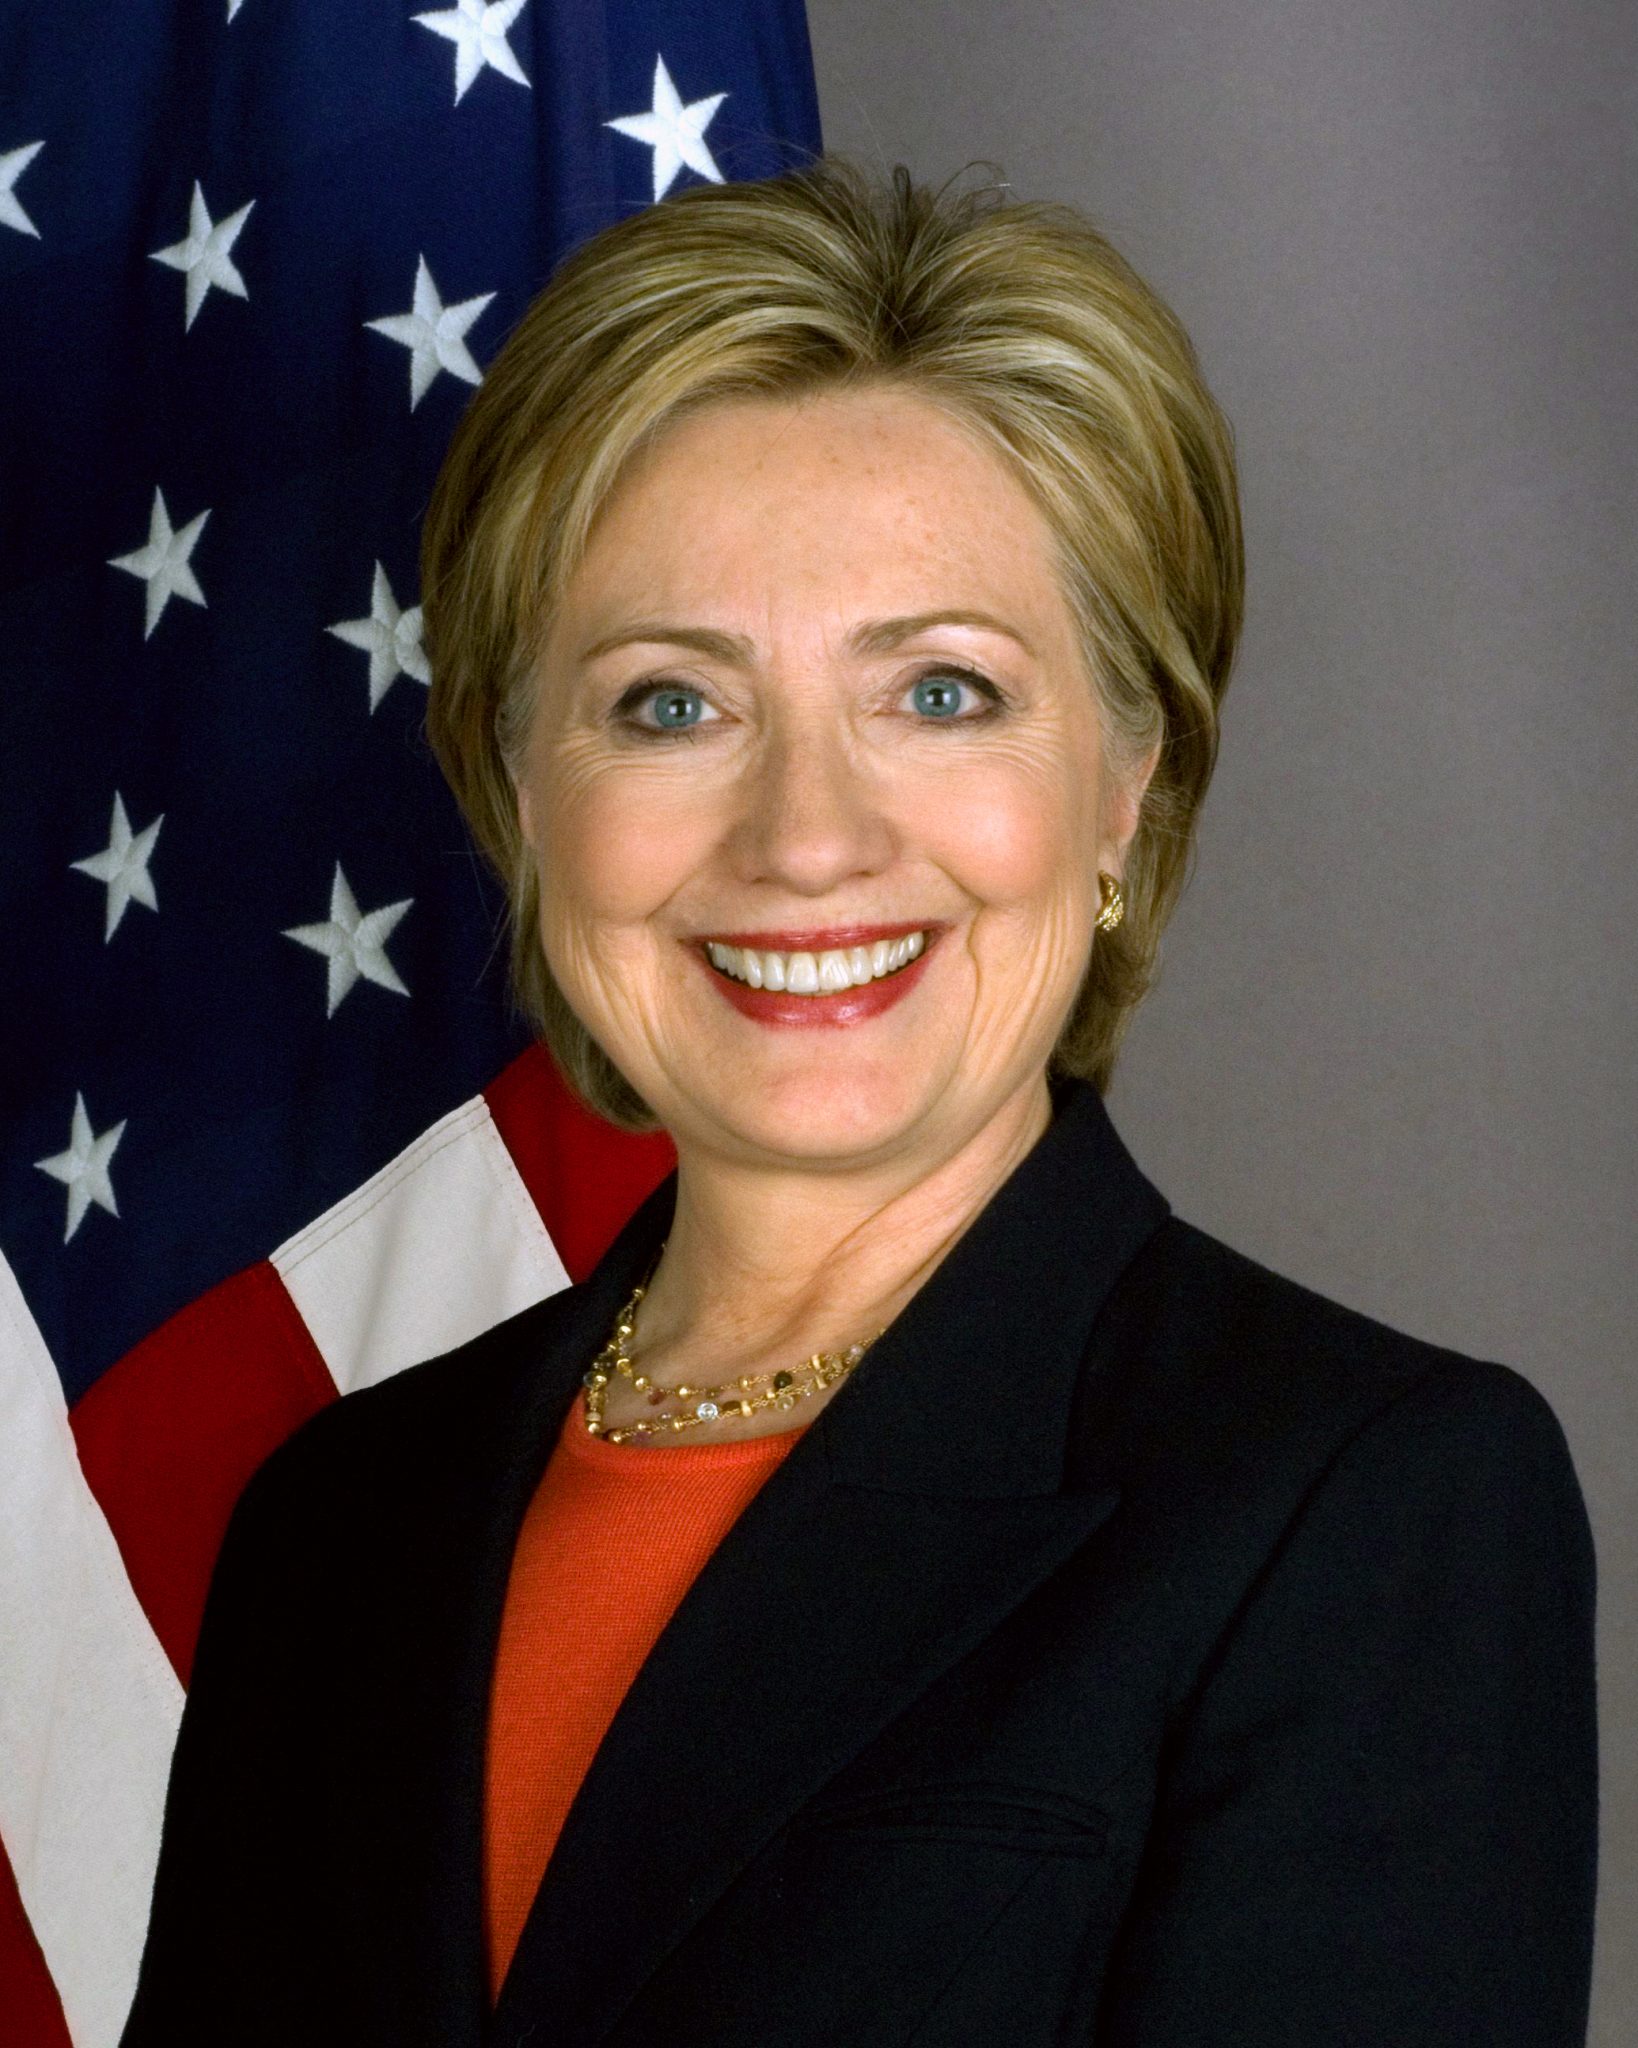 Hillary Clinton (Courtesy of Wikipedia)